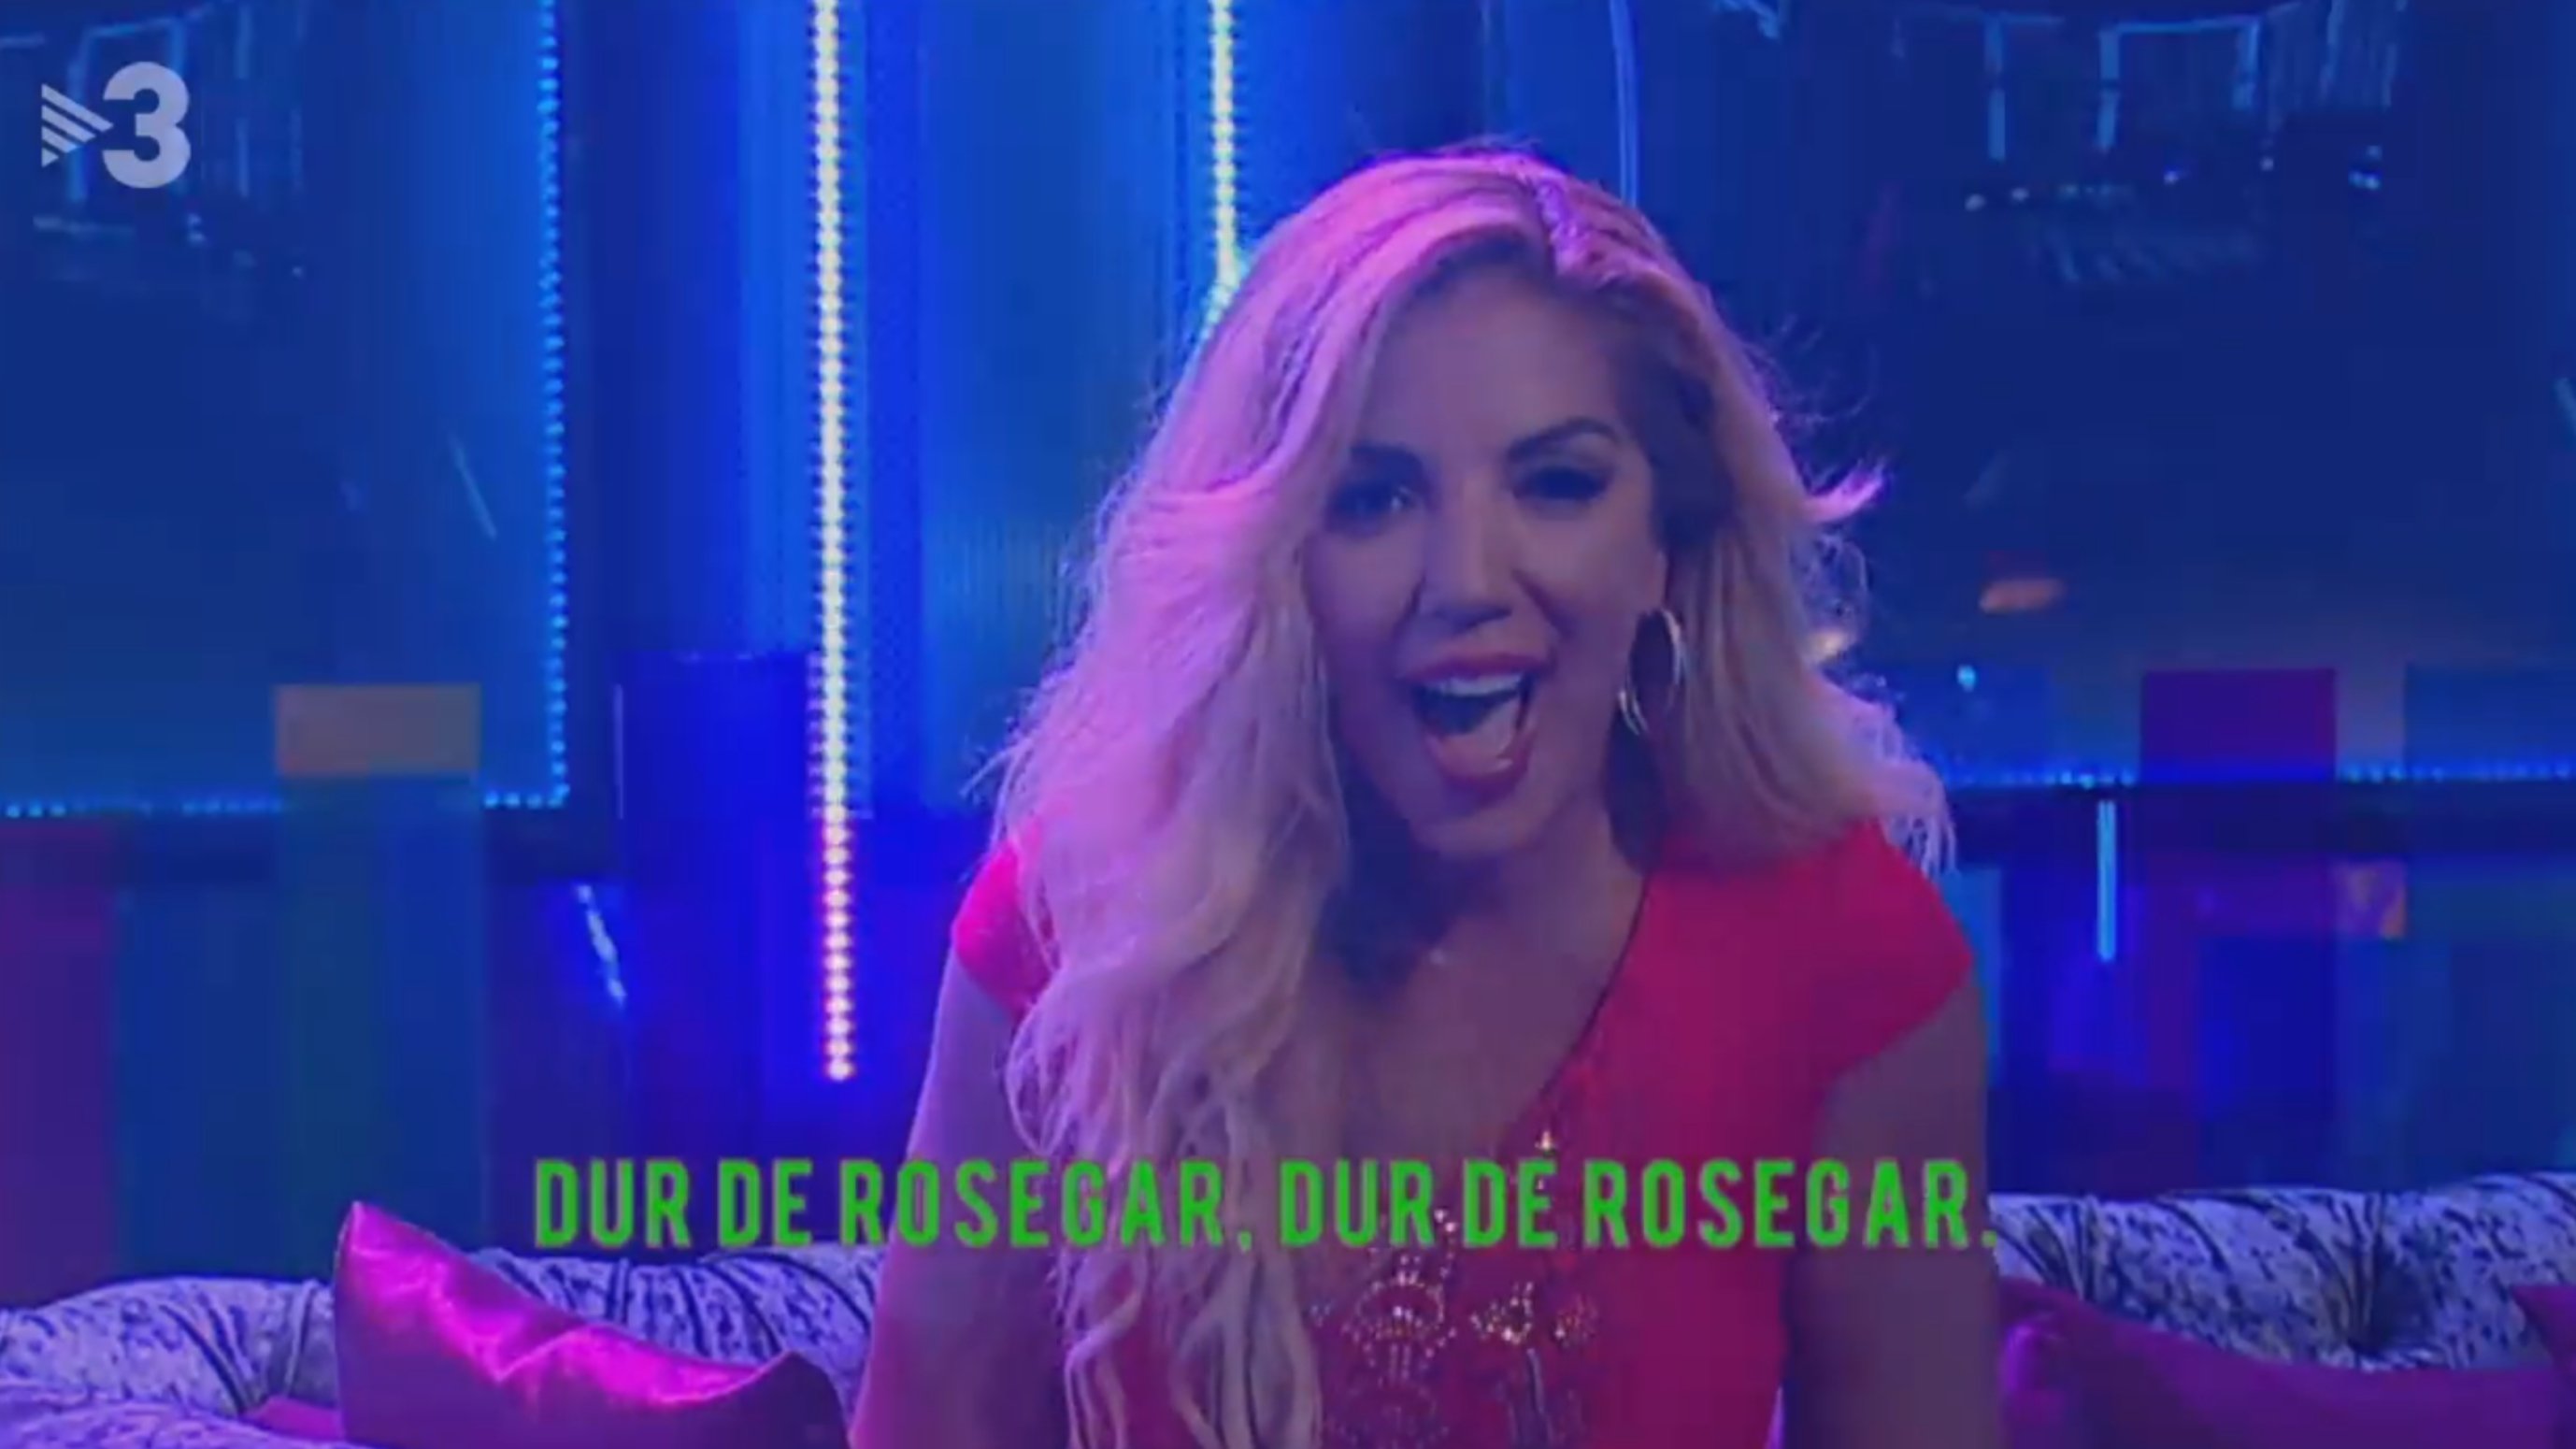 Rebeca canta en català el seu hit més conegut a TV3: "Dur de rosegar"